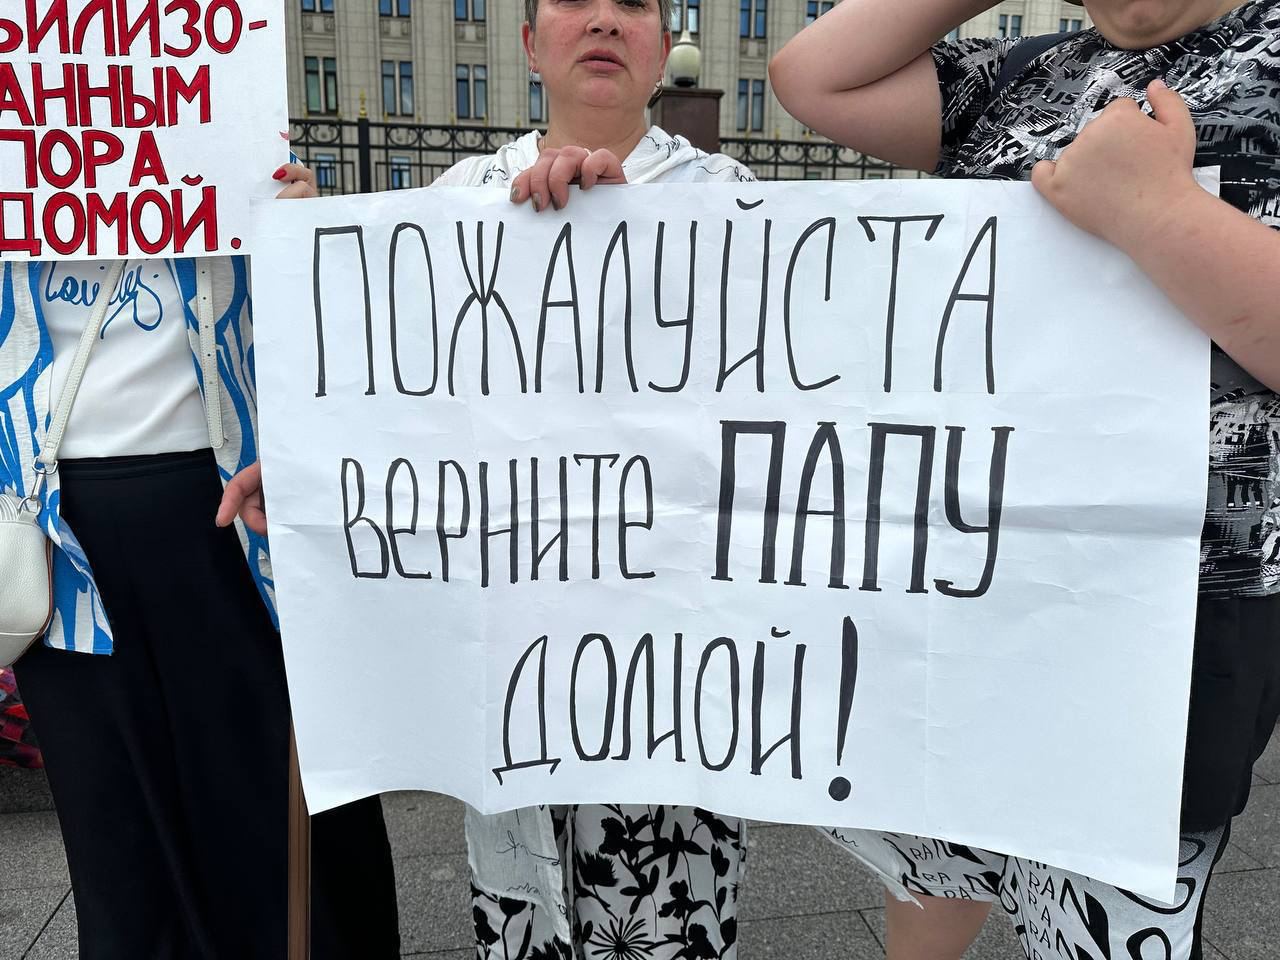 Фото (3) участниц пикета в Москве. Источник - Телеграм